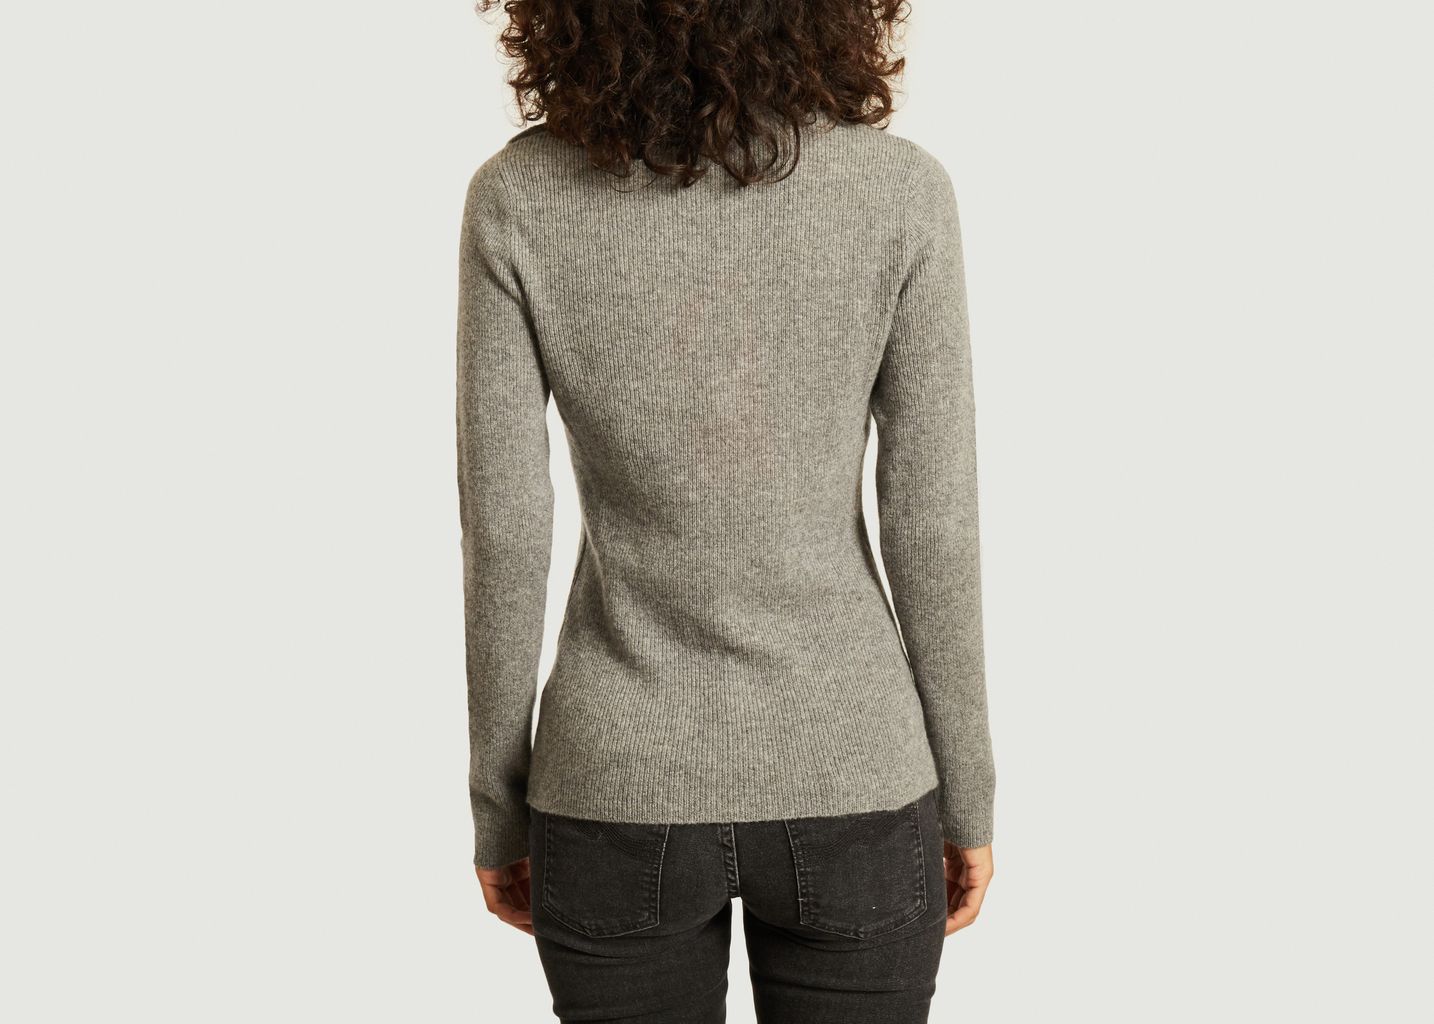 Caroline cashmere sweater - Absolut cashmere